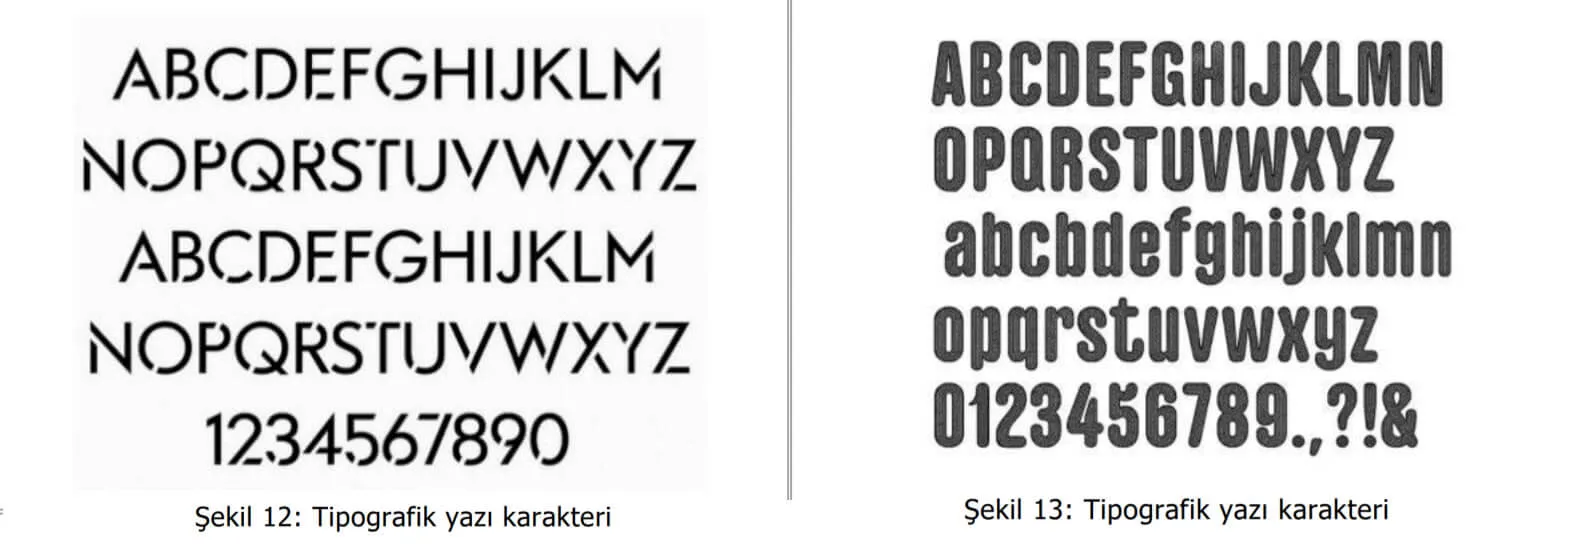 tipografik yazı karakter örnekleri-kütahya web tasarım